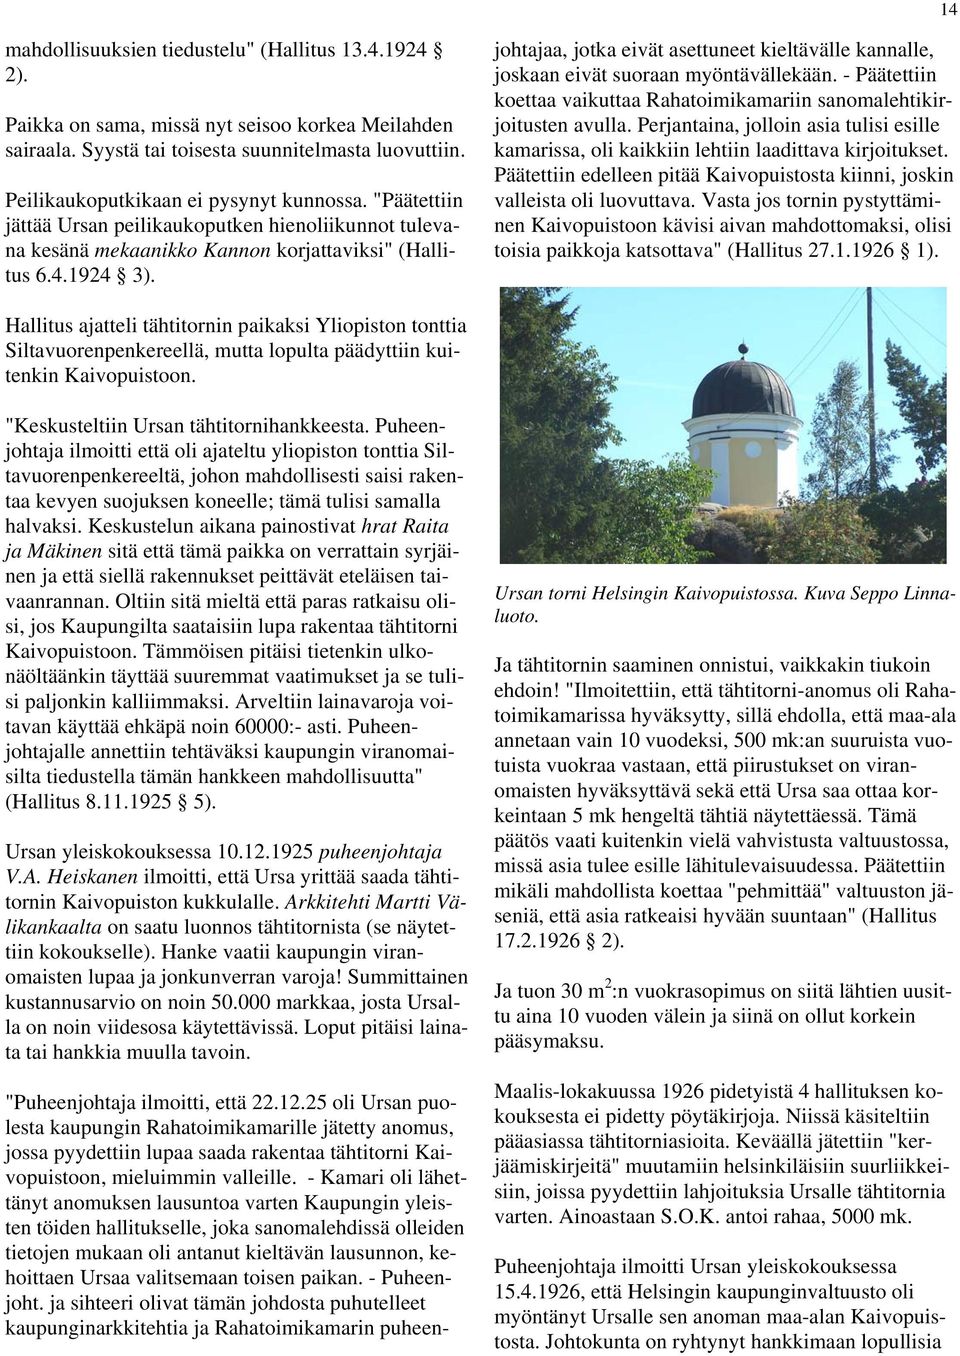 "Puheenjohtaja ilmoitti, että 22.12.25 oli Ursan puolesta kaupungin Rahatoimikamarille jätetty anomus, jossa pyydettiin lupaa saada rakentaa tähtitorni Kaivopuistoon, mieluimmin valleille.